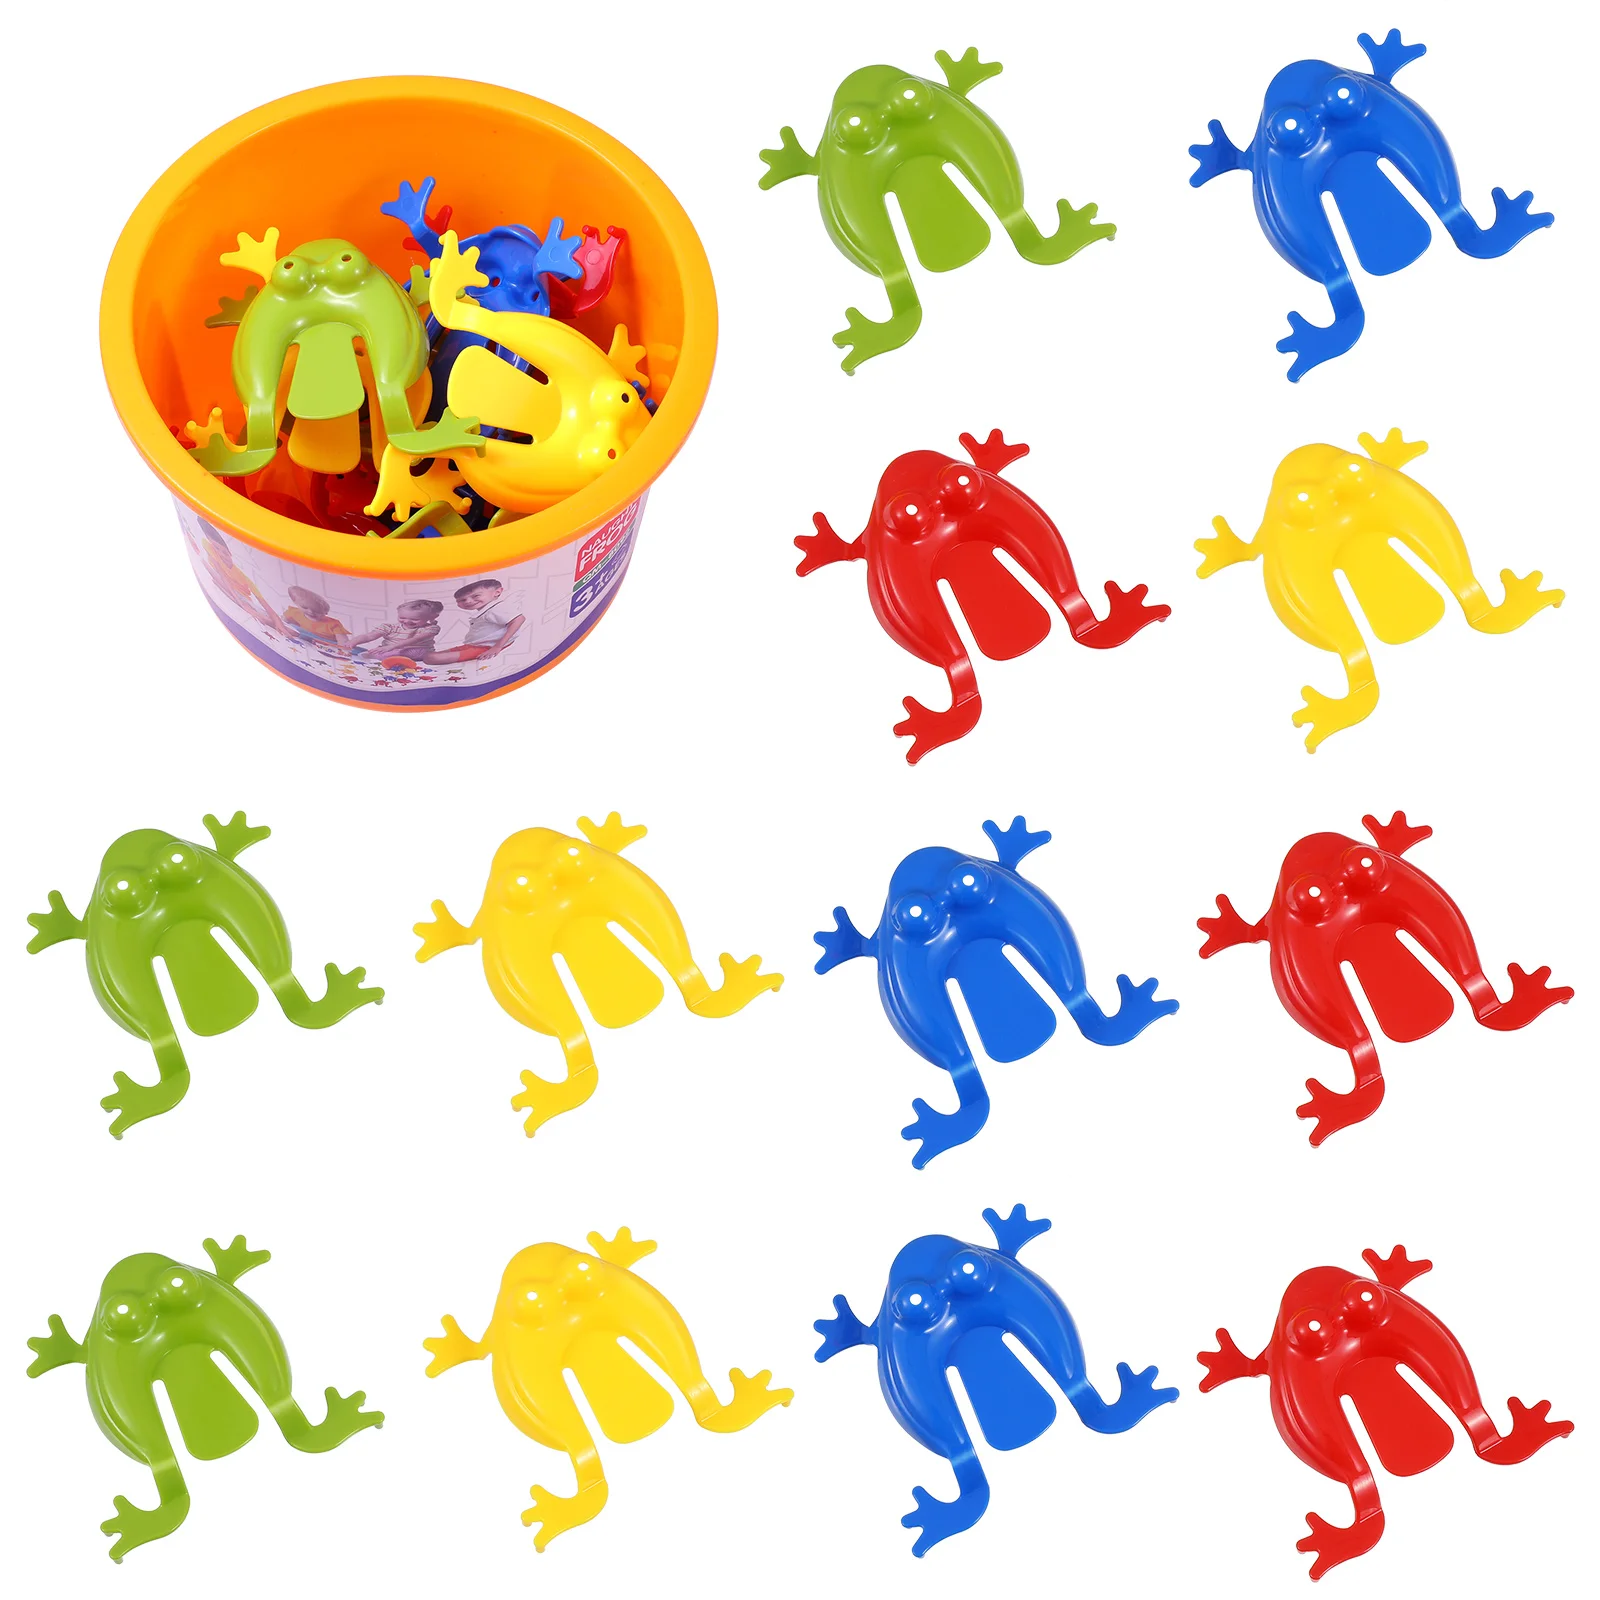 

Игра-пазл лягушка, игрушки-лягушки для прыжков, детские развивающие игрушки, крупные игрушки, прыгающие лягушки животных